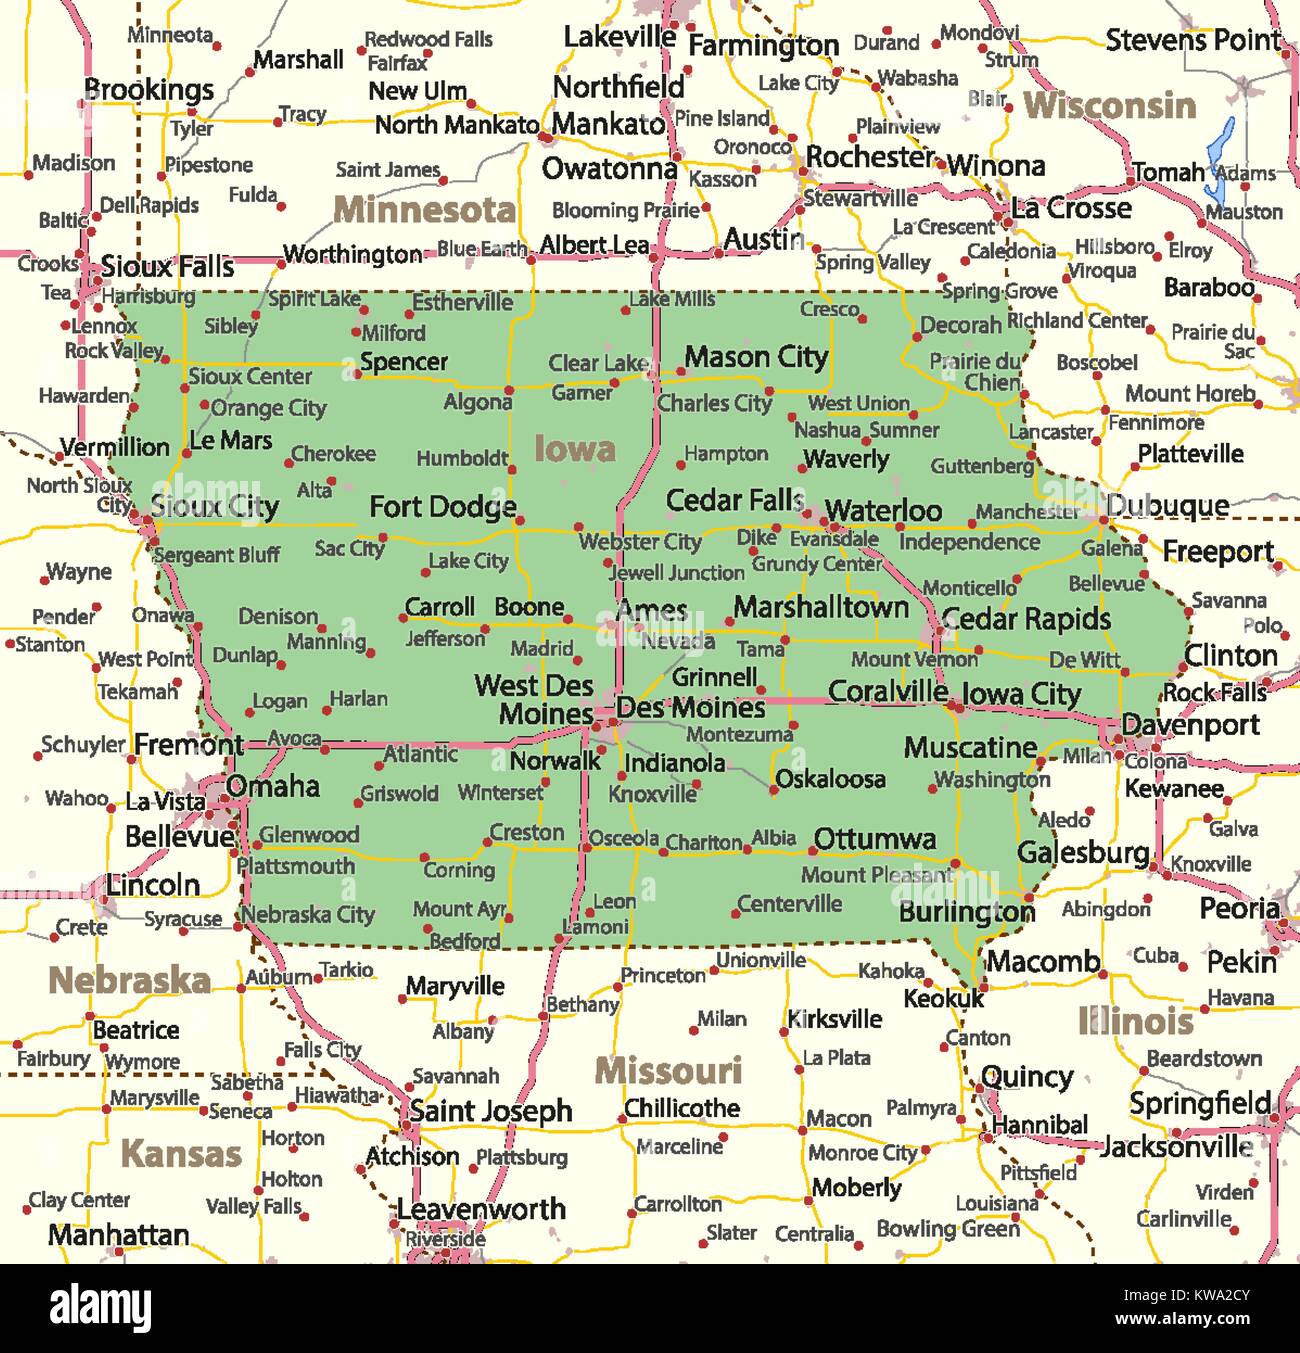 Mappa di Iowa. Mostra i confini, zone urbane, nomi di località, strade e autostrade. Proiezione: proiezione di Mercatore. Illustrazione Vettoriale